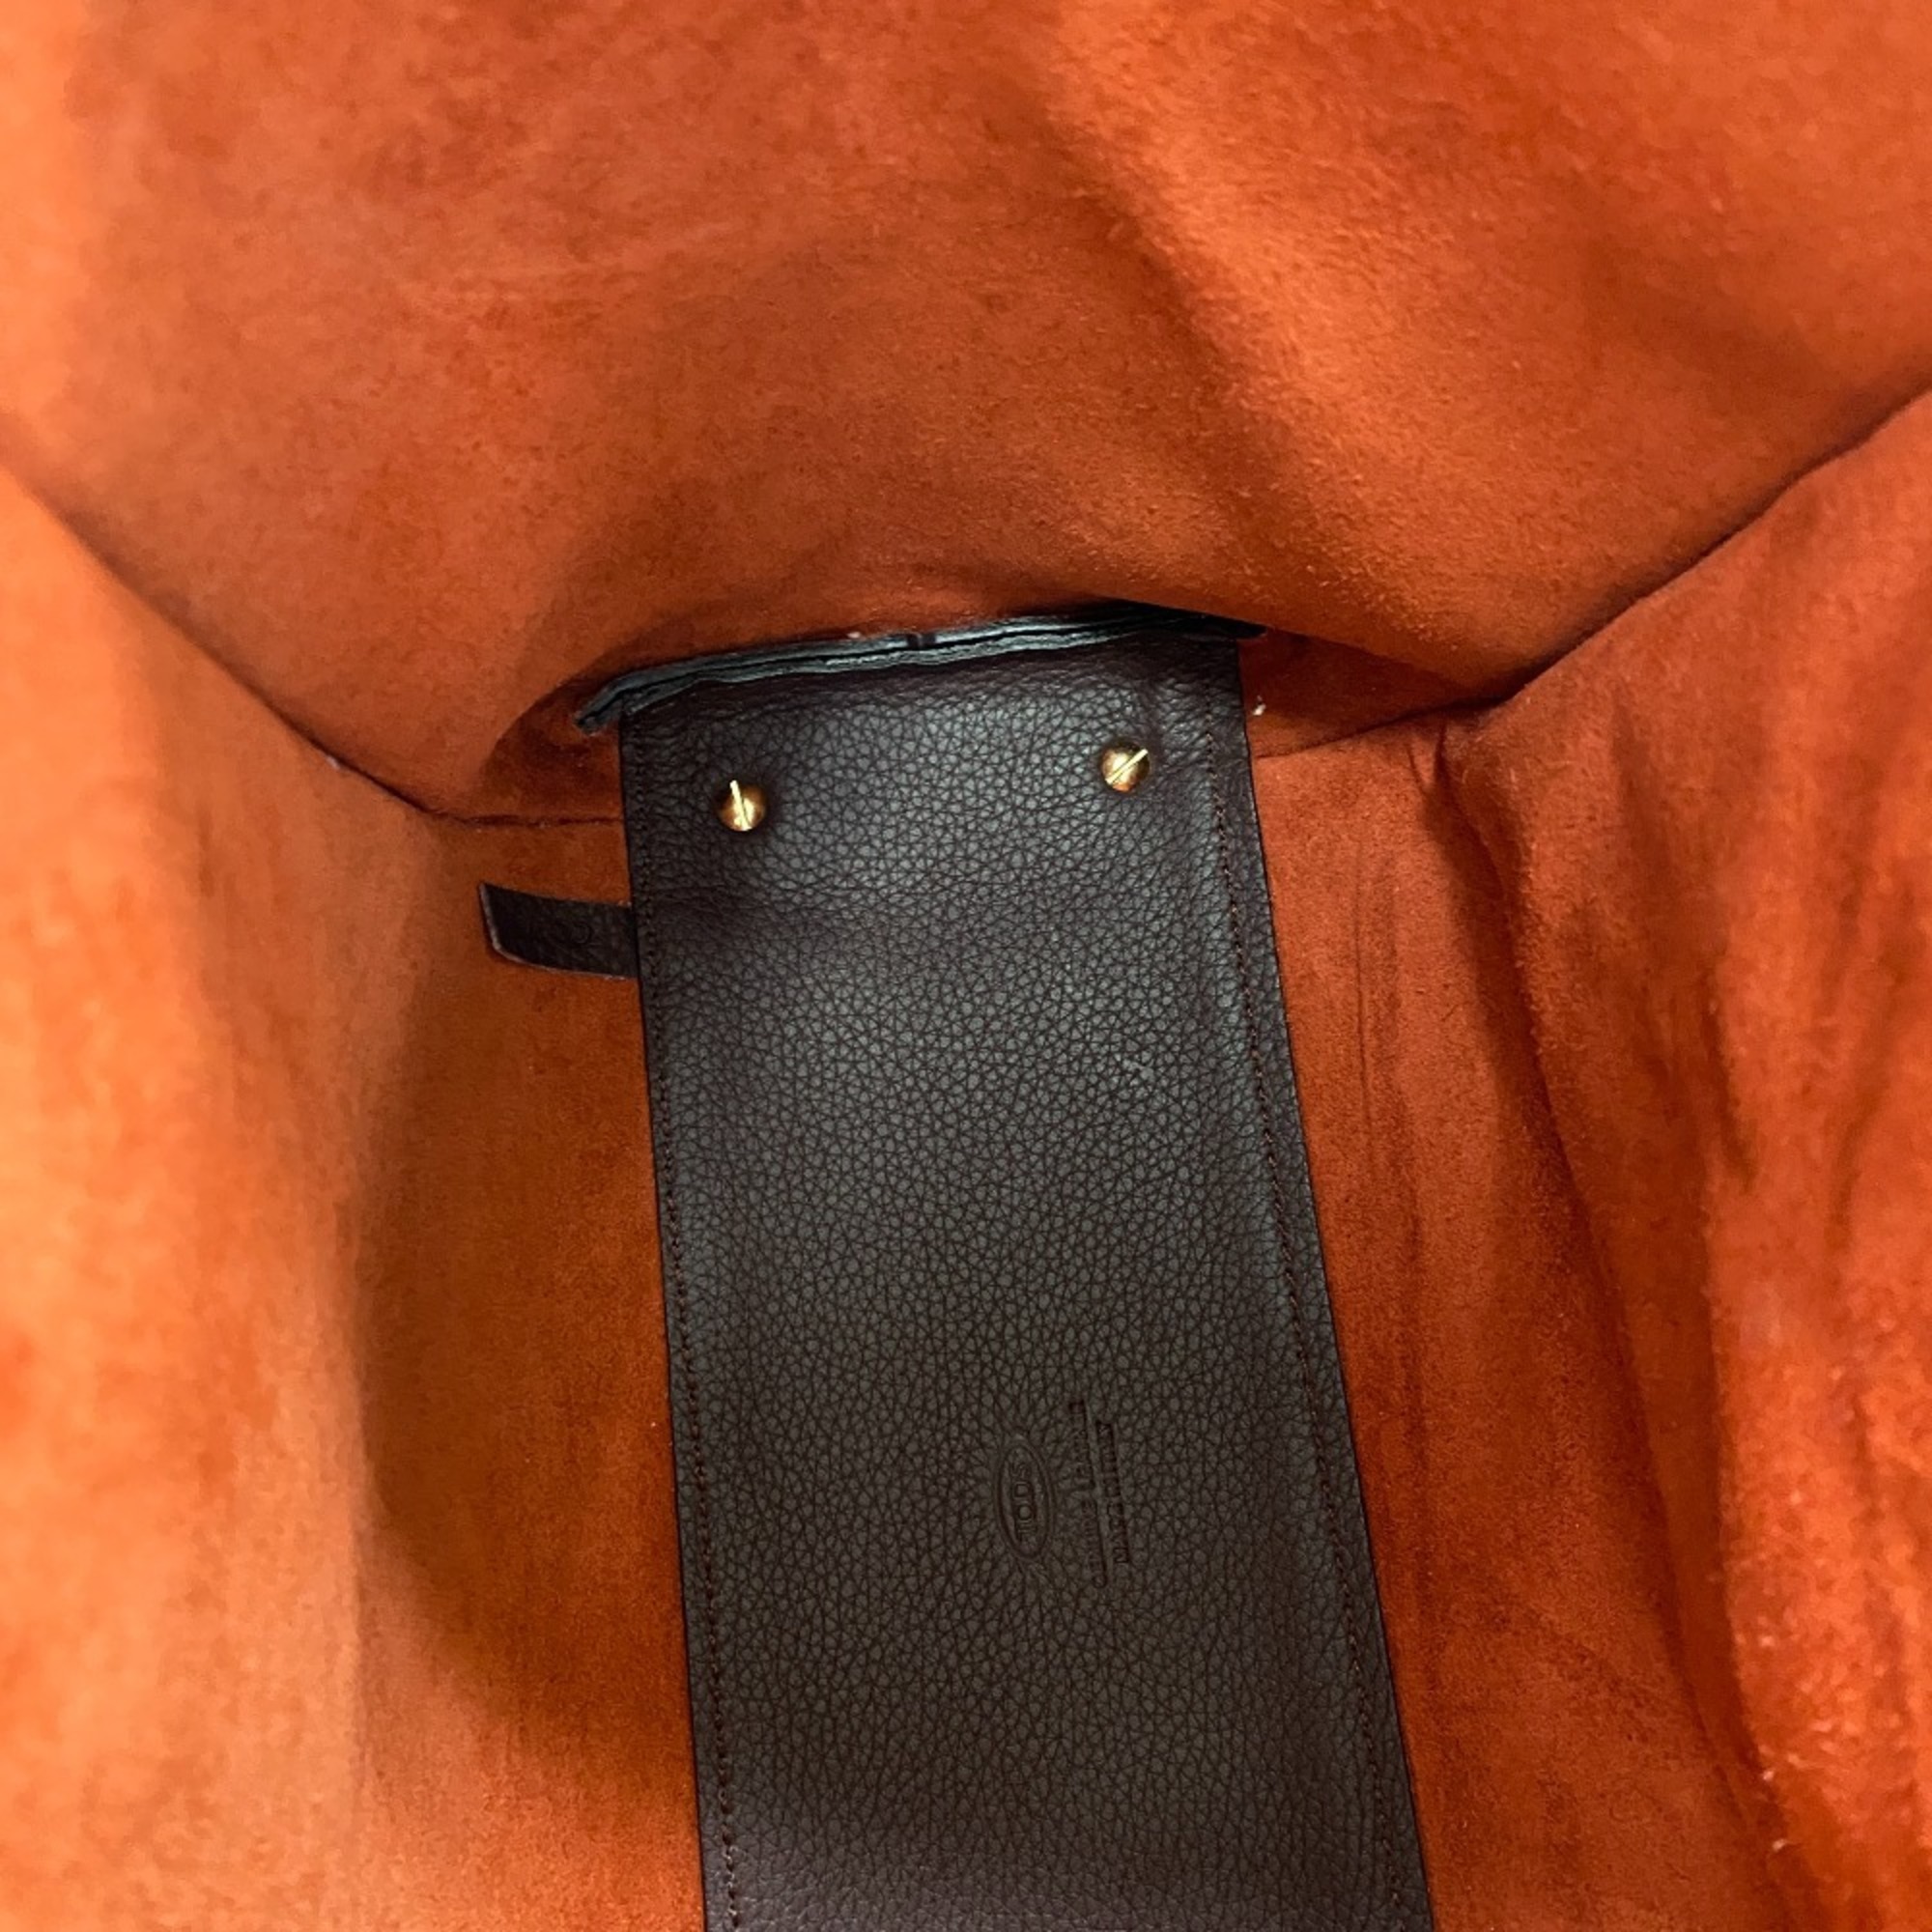 Tod's TOD’S Double T-ring Handbag Shoulder Bag Bordeaux Ladies Z0005799